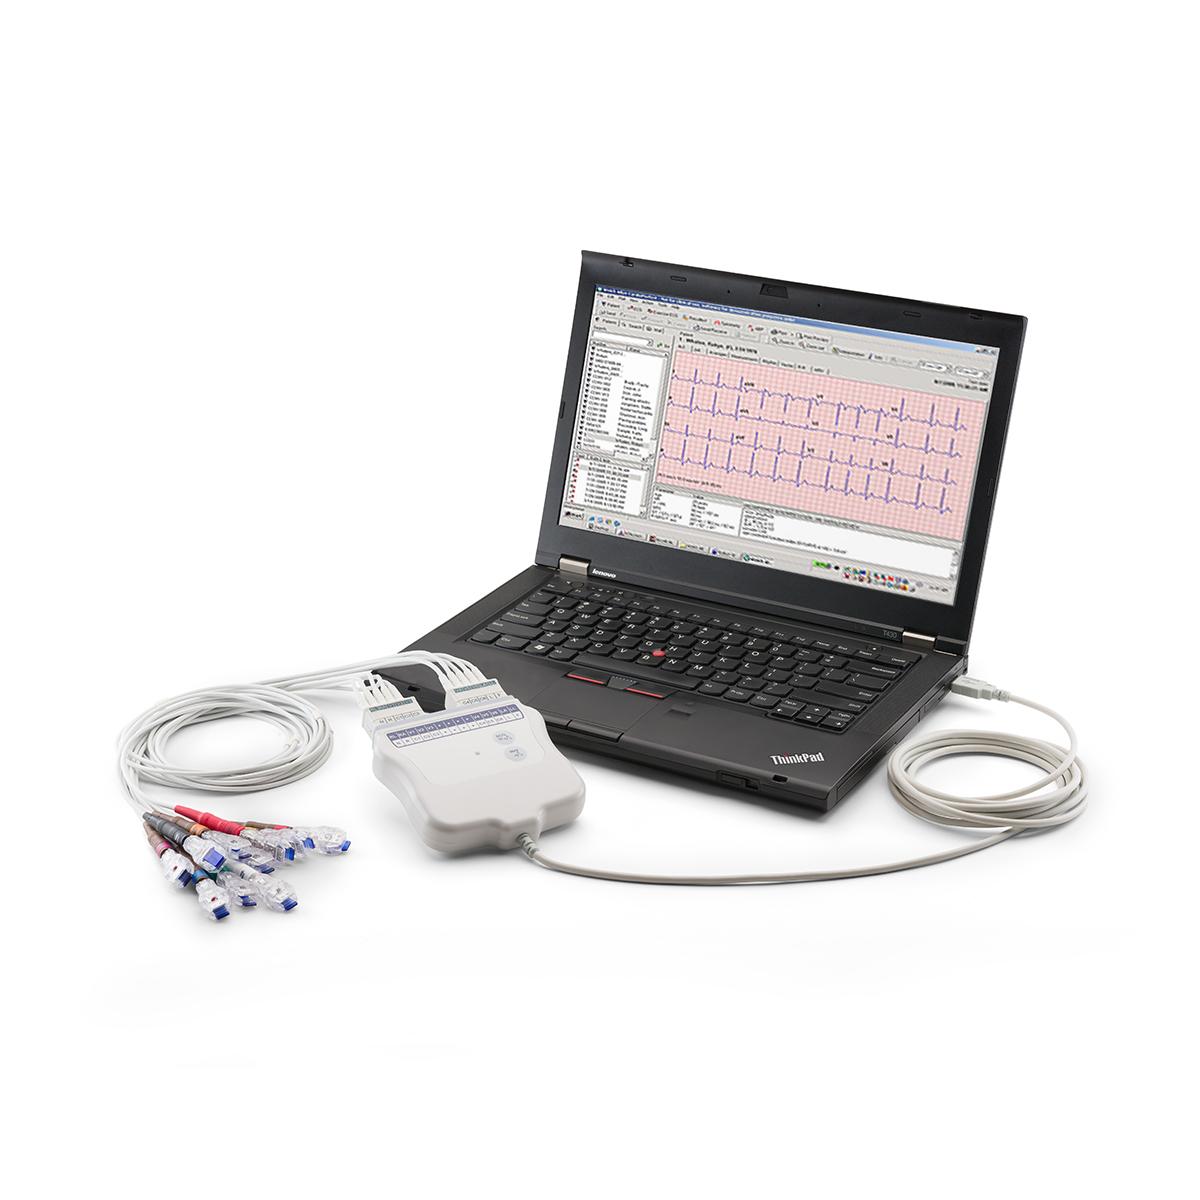 ECG de repos sur la CardioPerfect Workstation connectée par USB à un ordinateur portable, vue de ¾